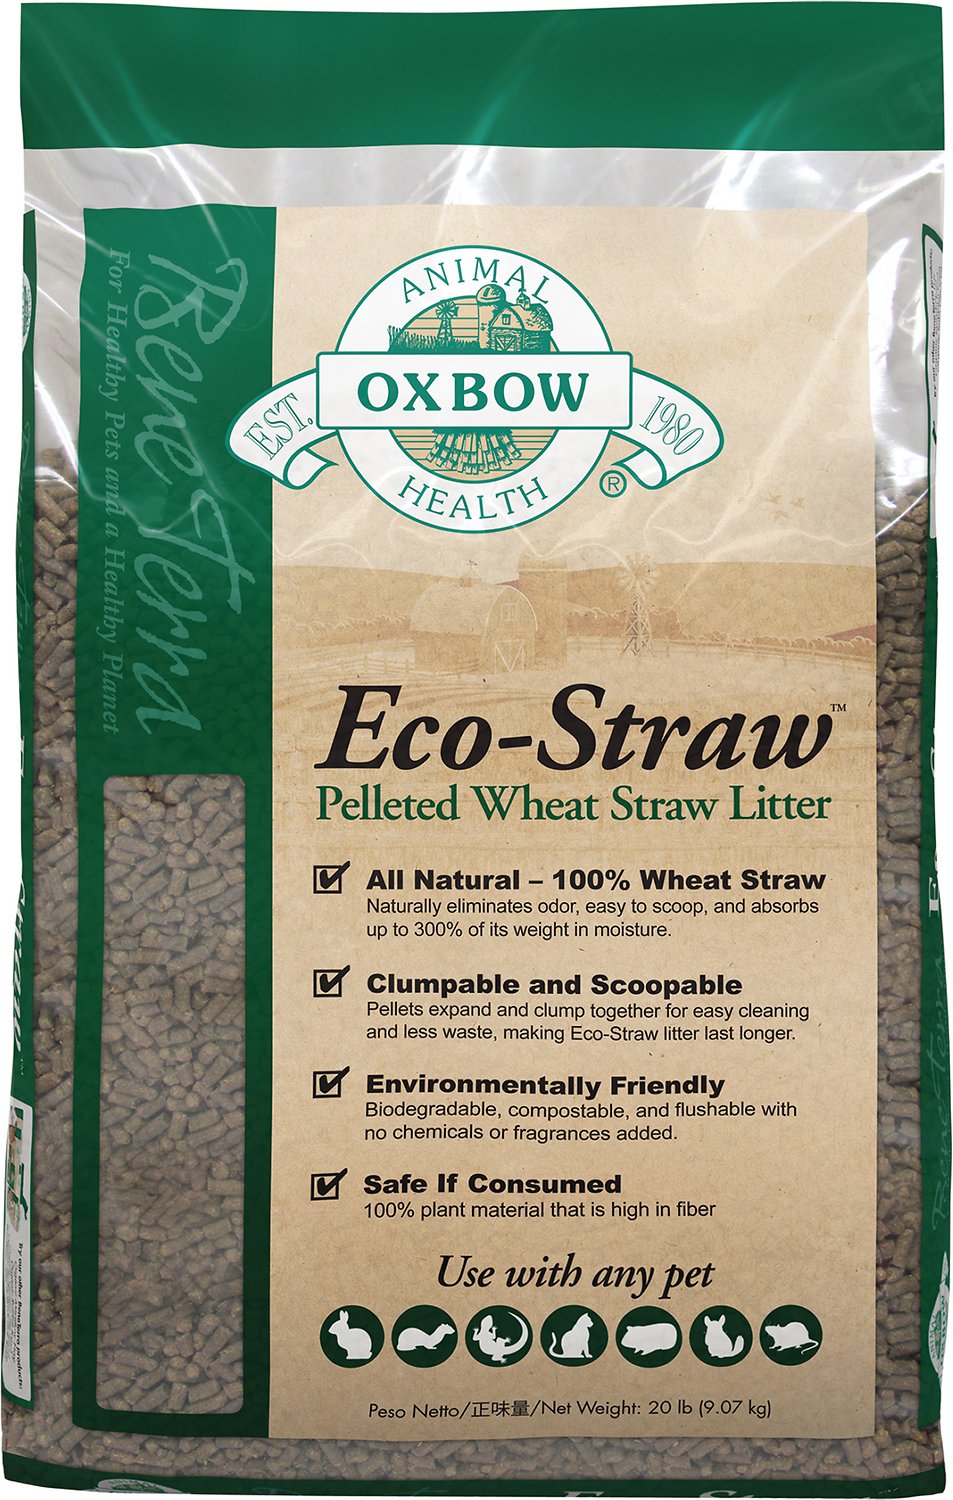 OXB Eco Straw Litter Pellet 20